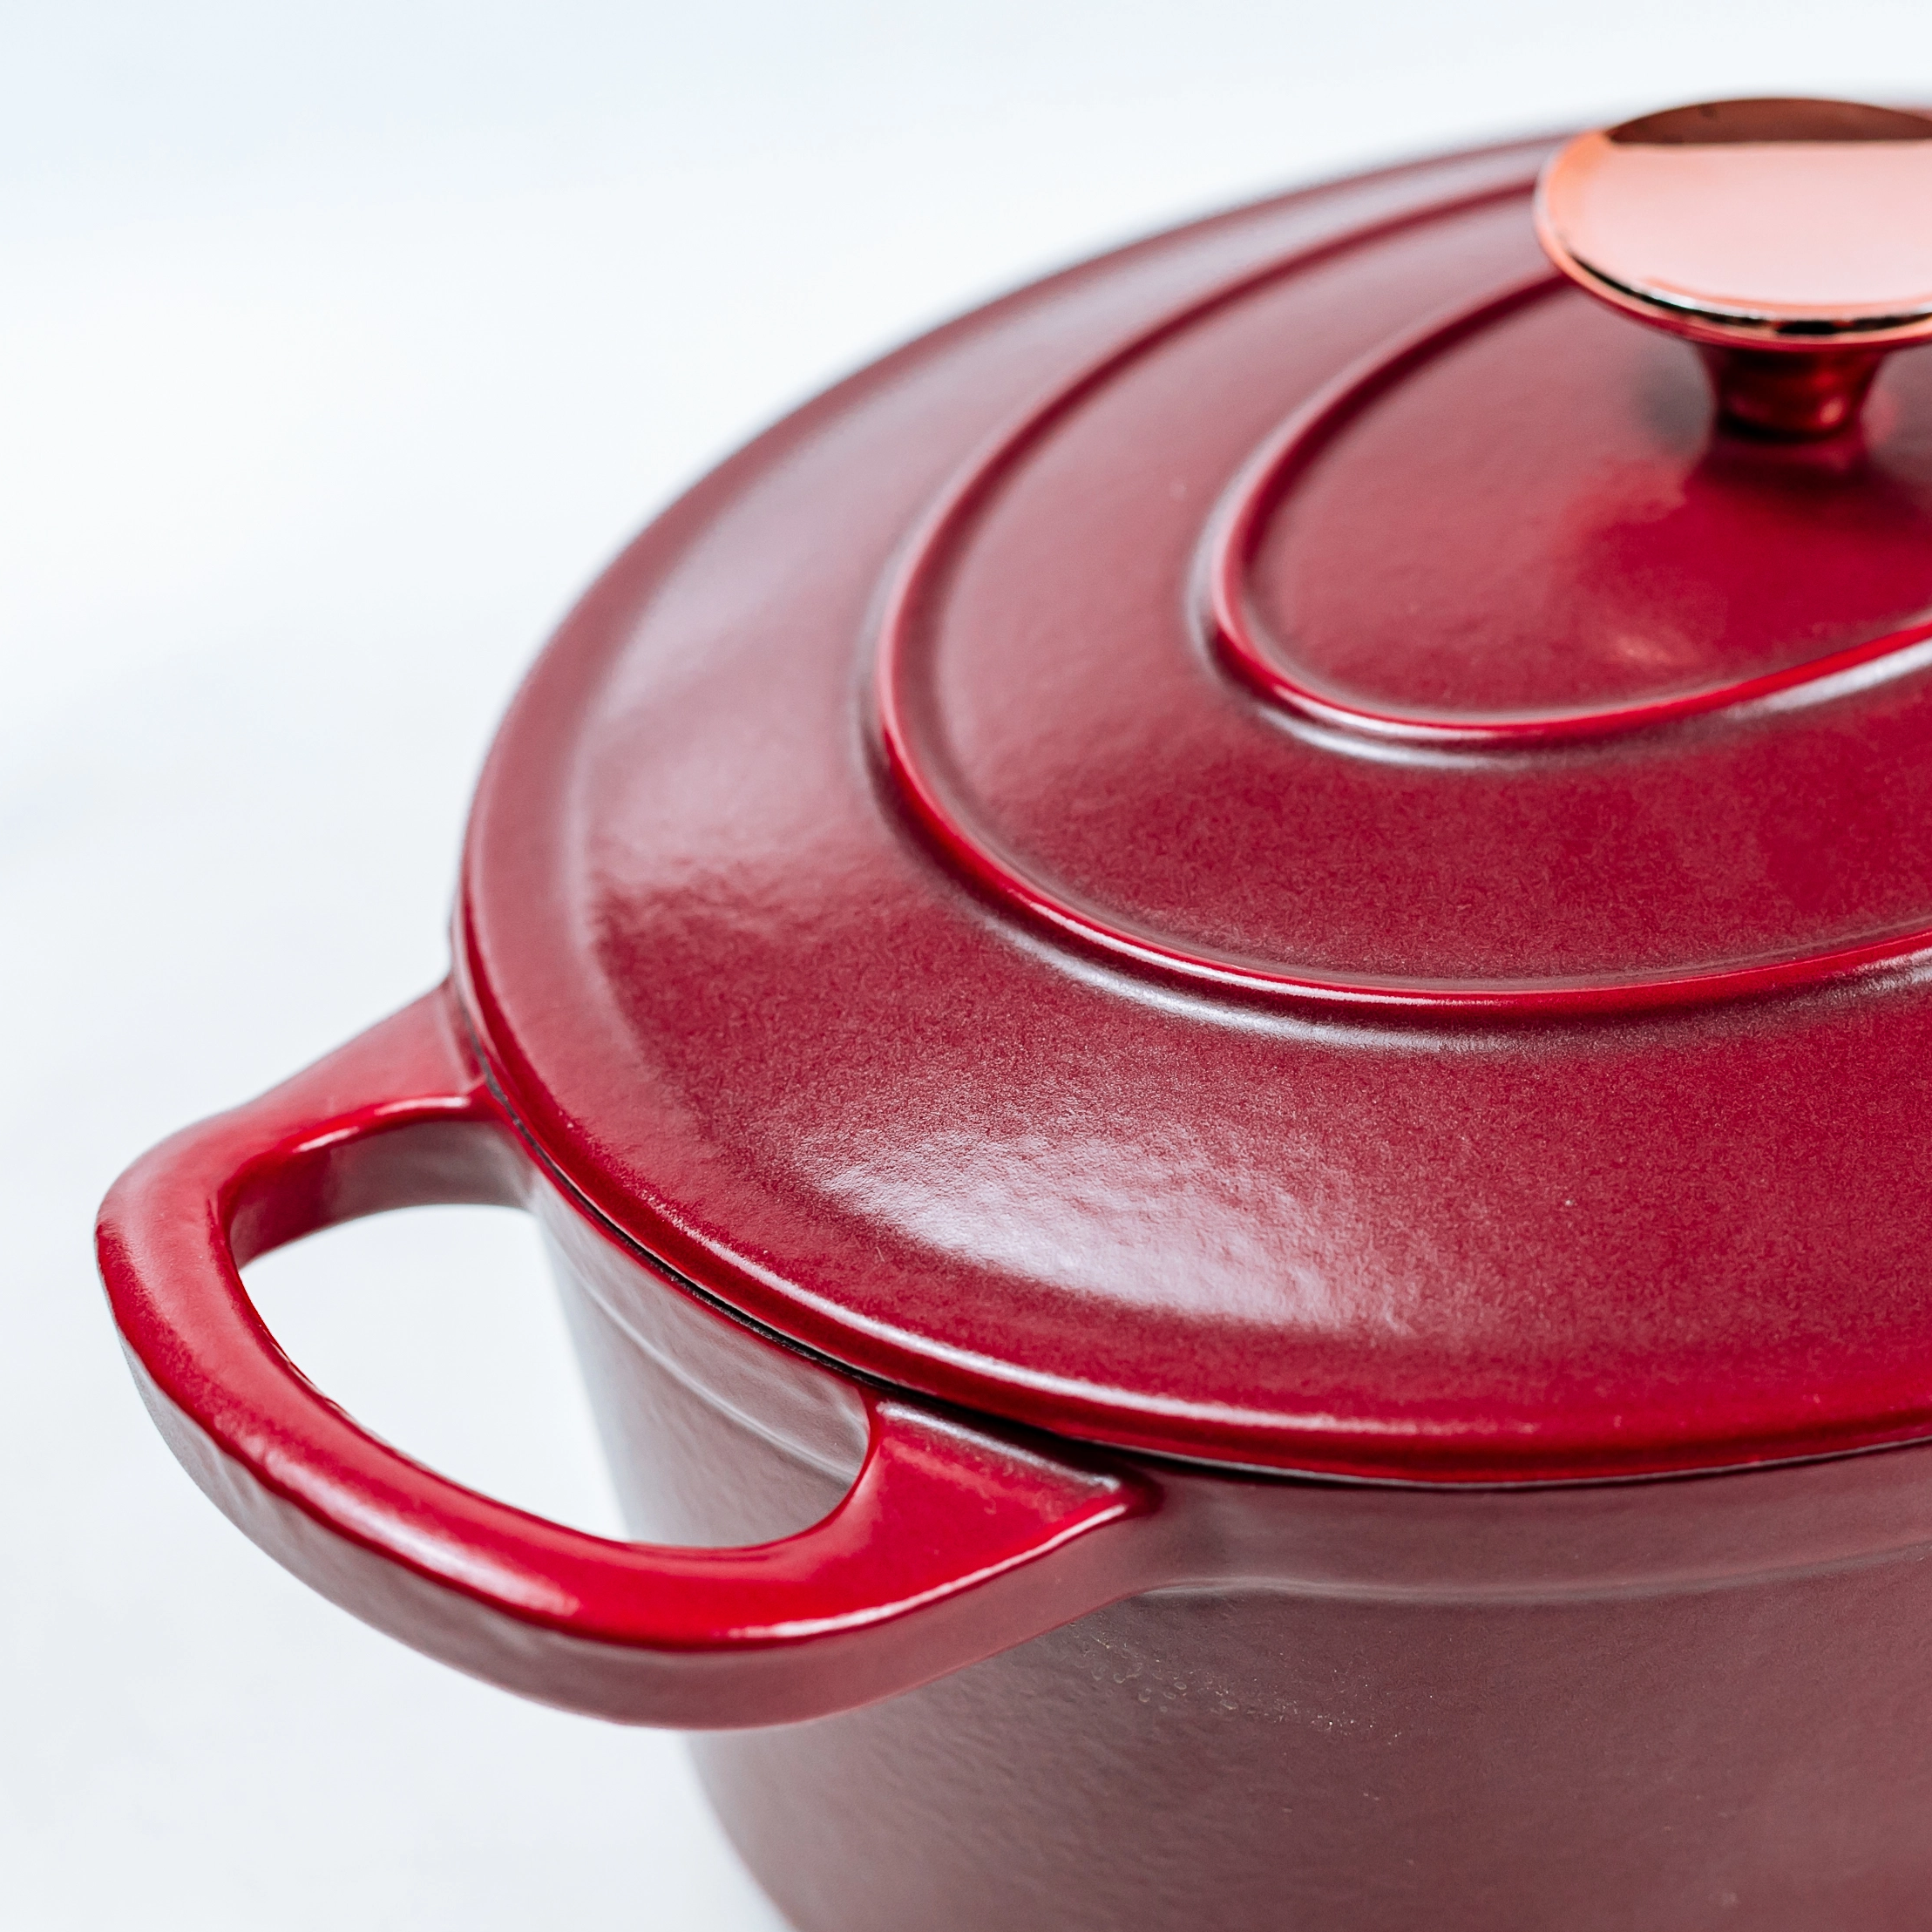 Красная эмалированная овальная печь для выпечки 4,5 кварт чугунной кокотницы